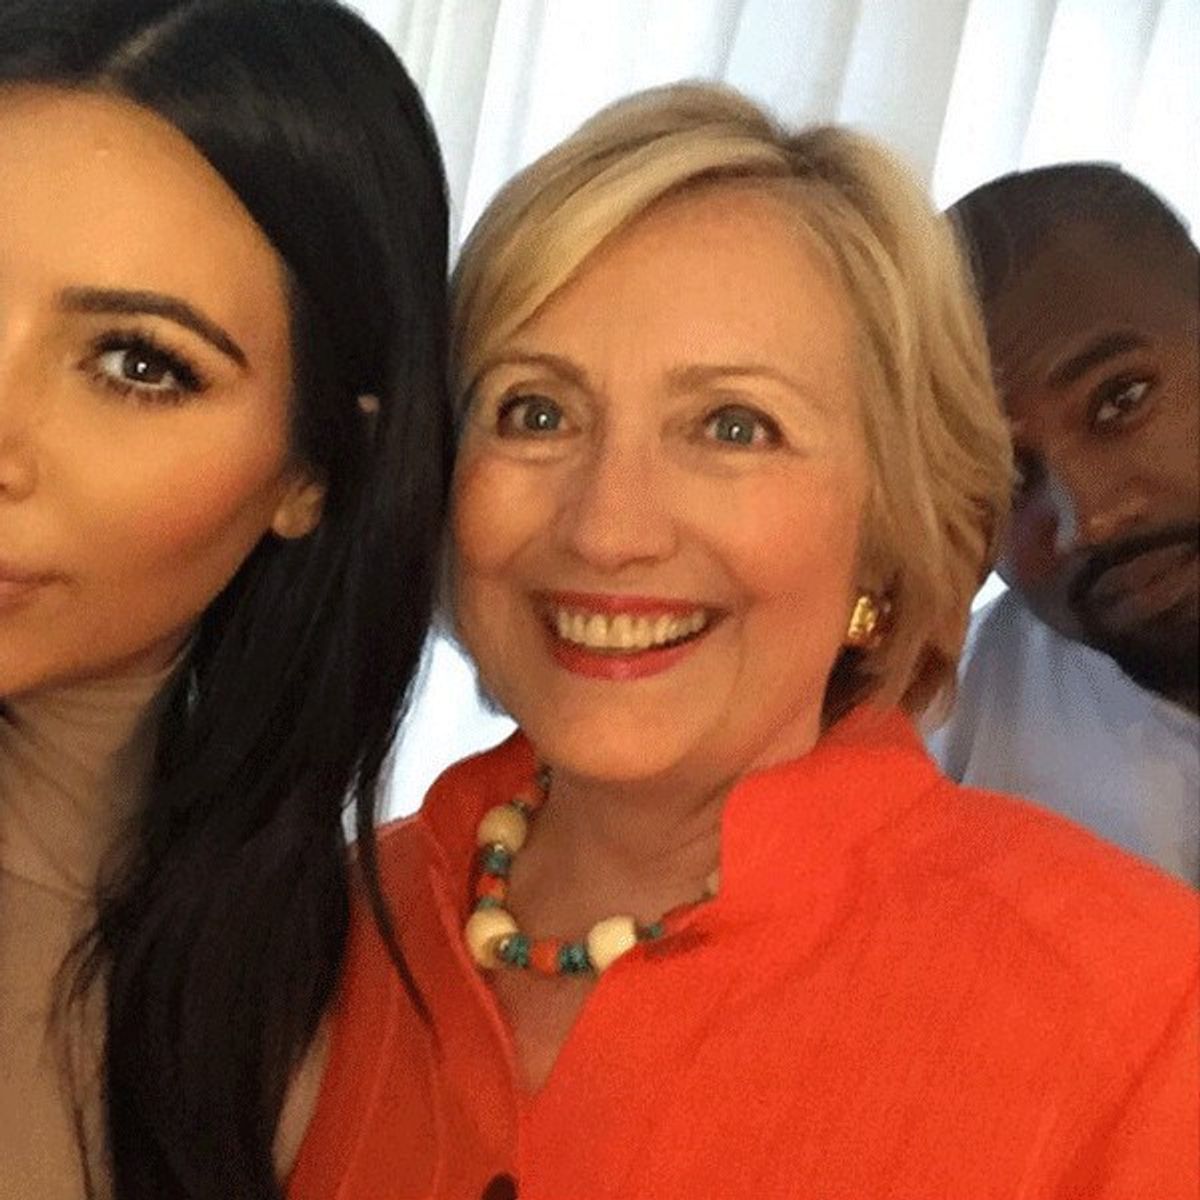 Hillary Clinton or Kim Kardashian?